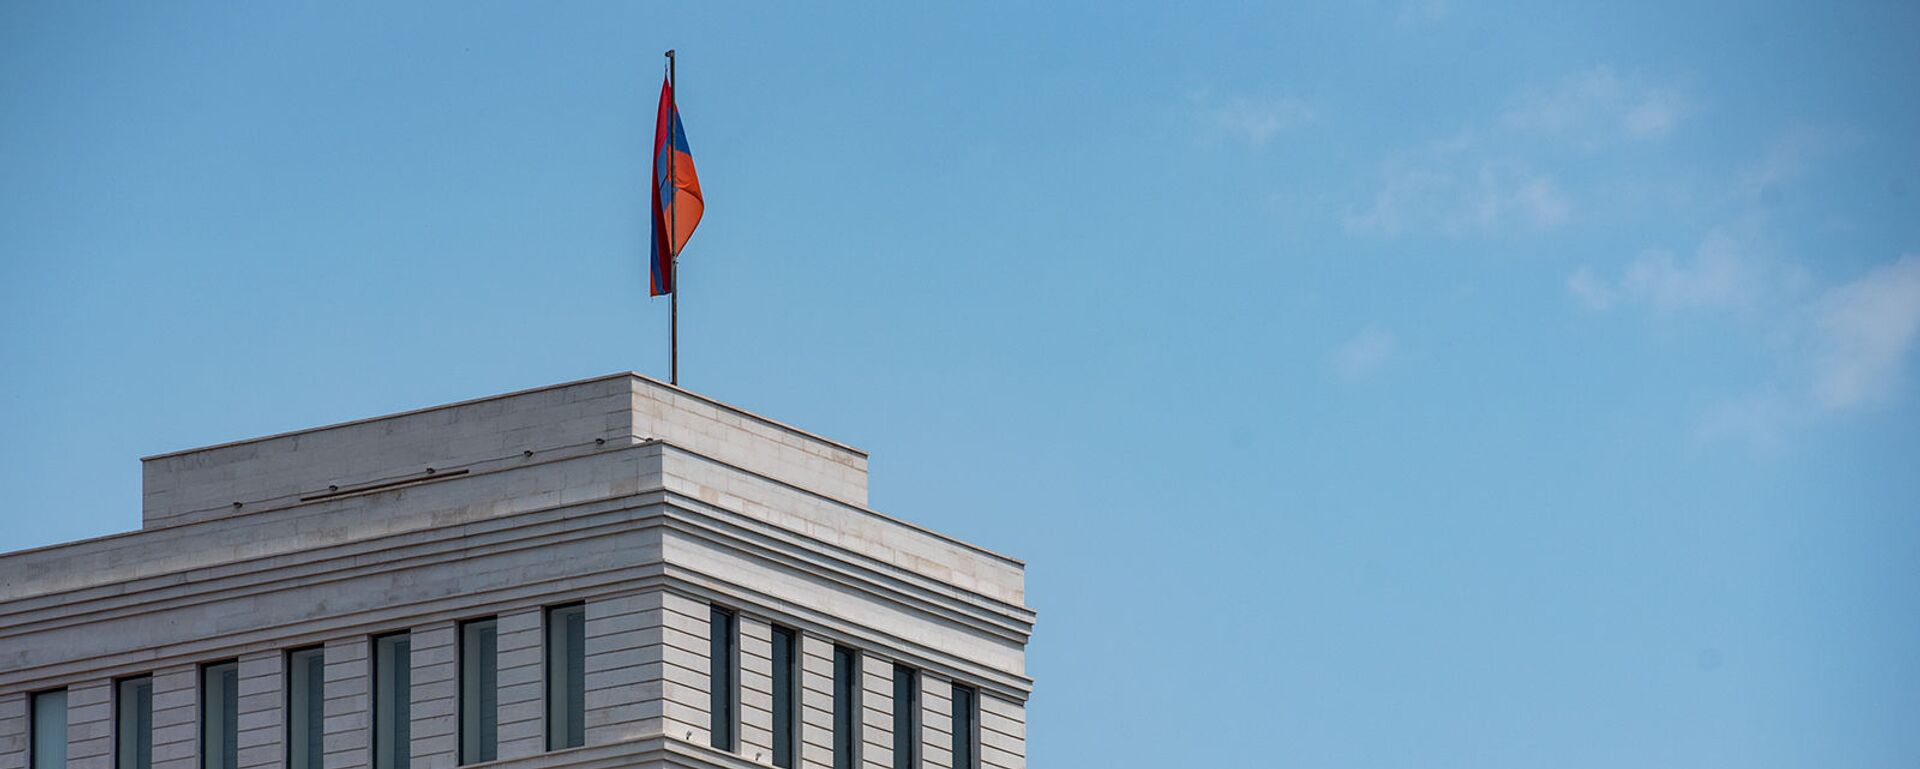 Здание Министерства иностранных дел Армении - Sputnik Армения, 1920, 15.08.2020